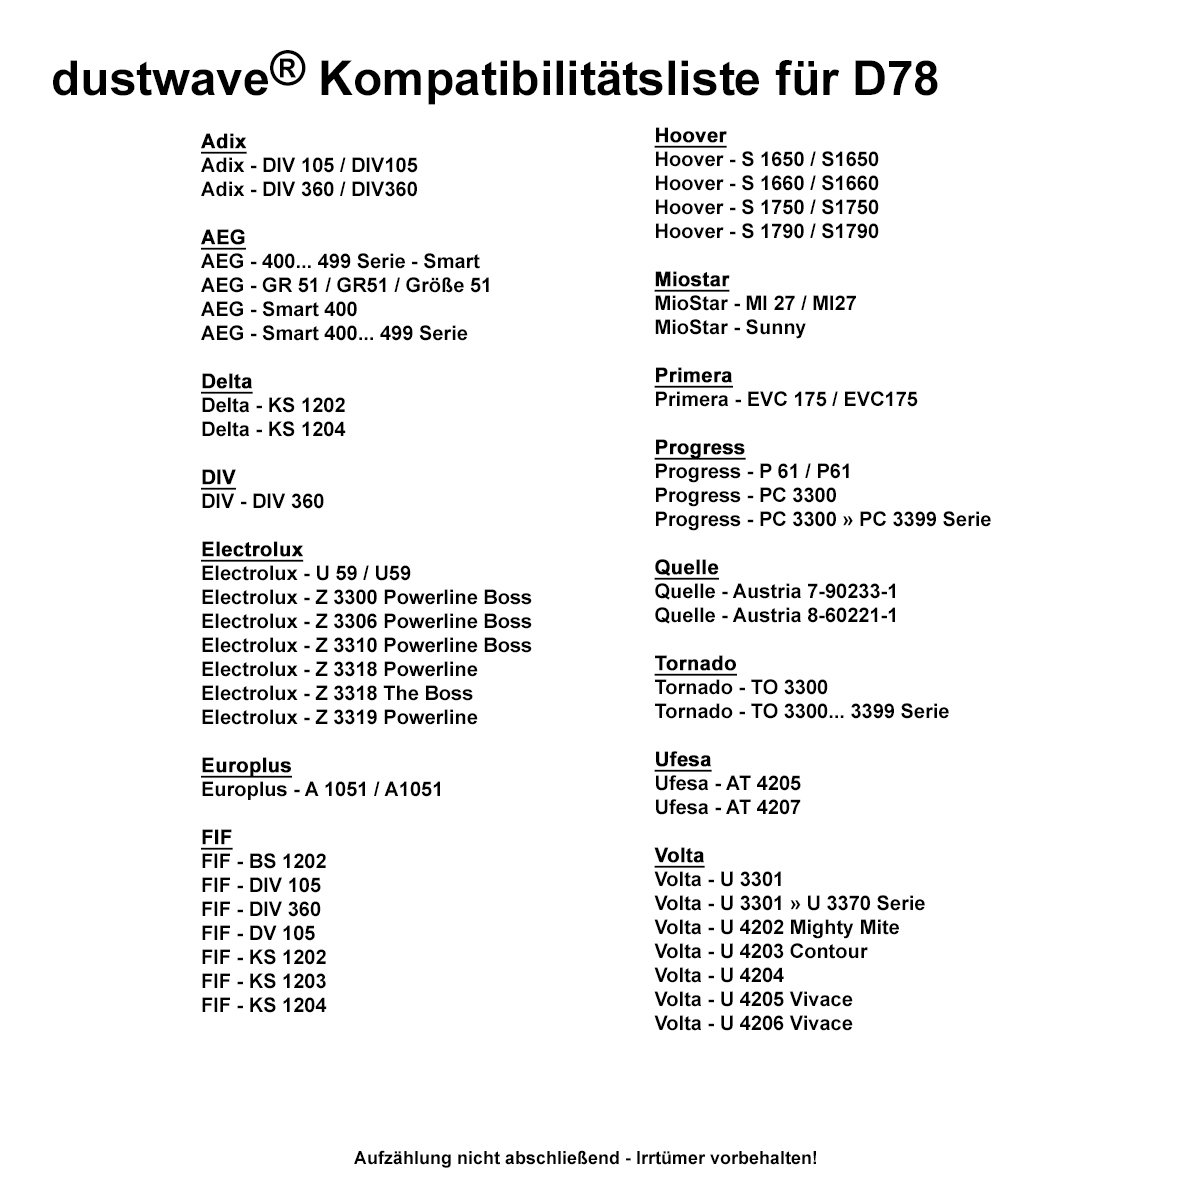 Dustwave® 1 Staubsaugerbeutel für AEG GR51 / Größe 51 - hocheffizient mit Hygieneverschluss - Made in Germany